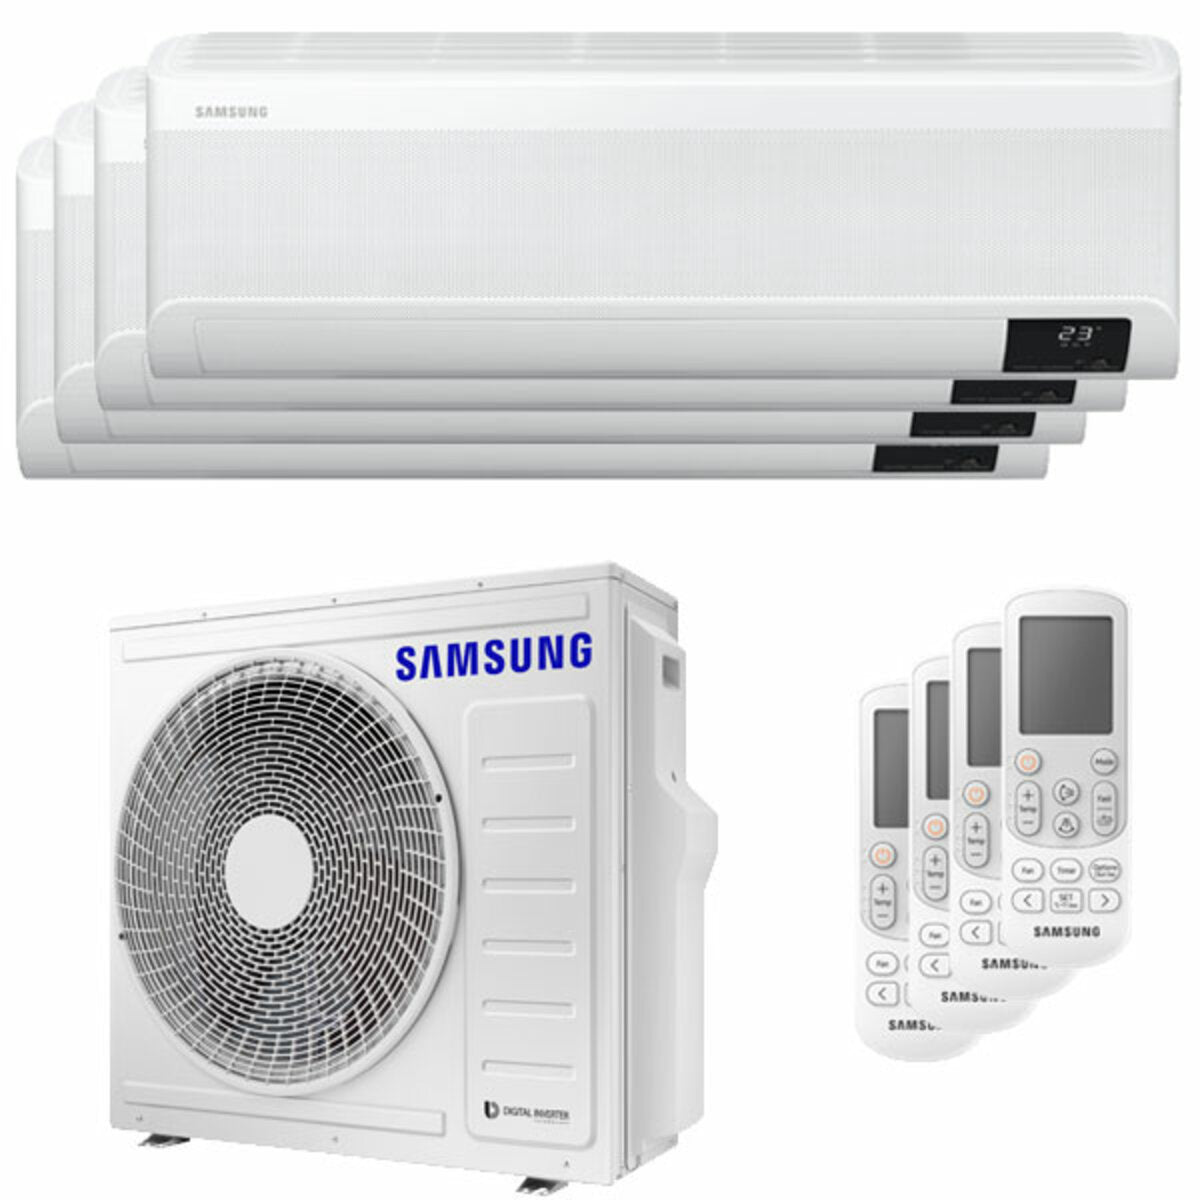 Samsung windfreie Klimaanlage Avant Quadri Split 7000 + 7000 + 7000 + 12000 BTU Inverter A++ WLAN Außengerät 8,0 kW